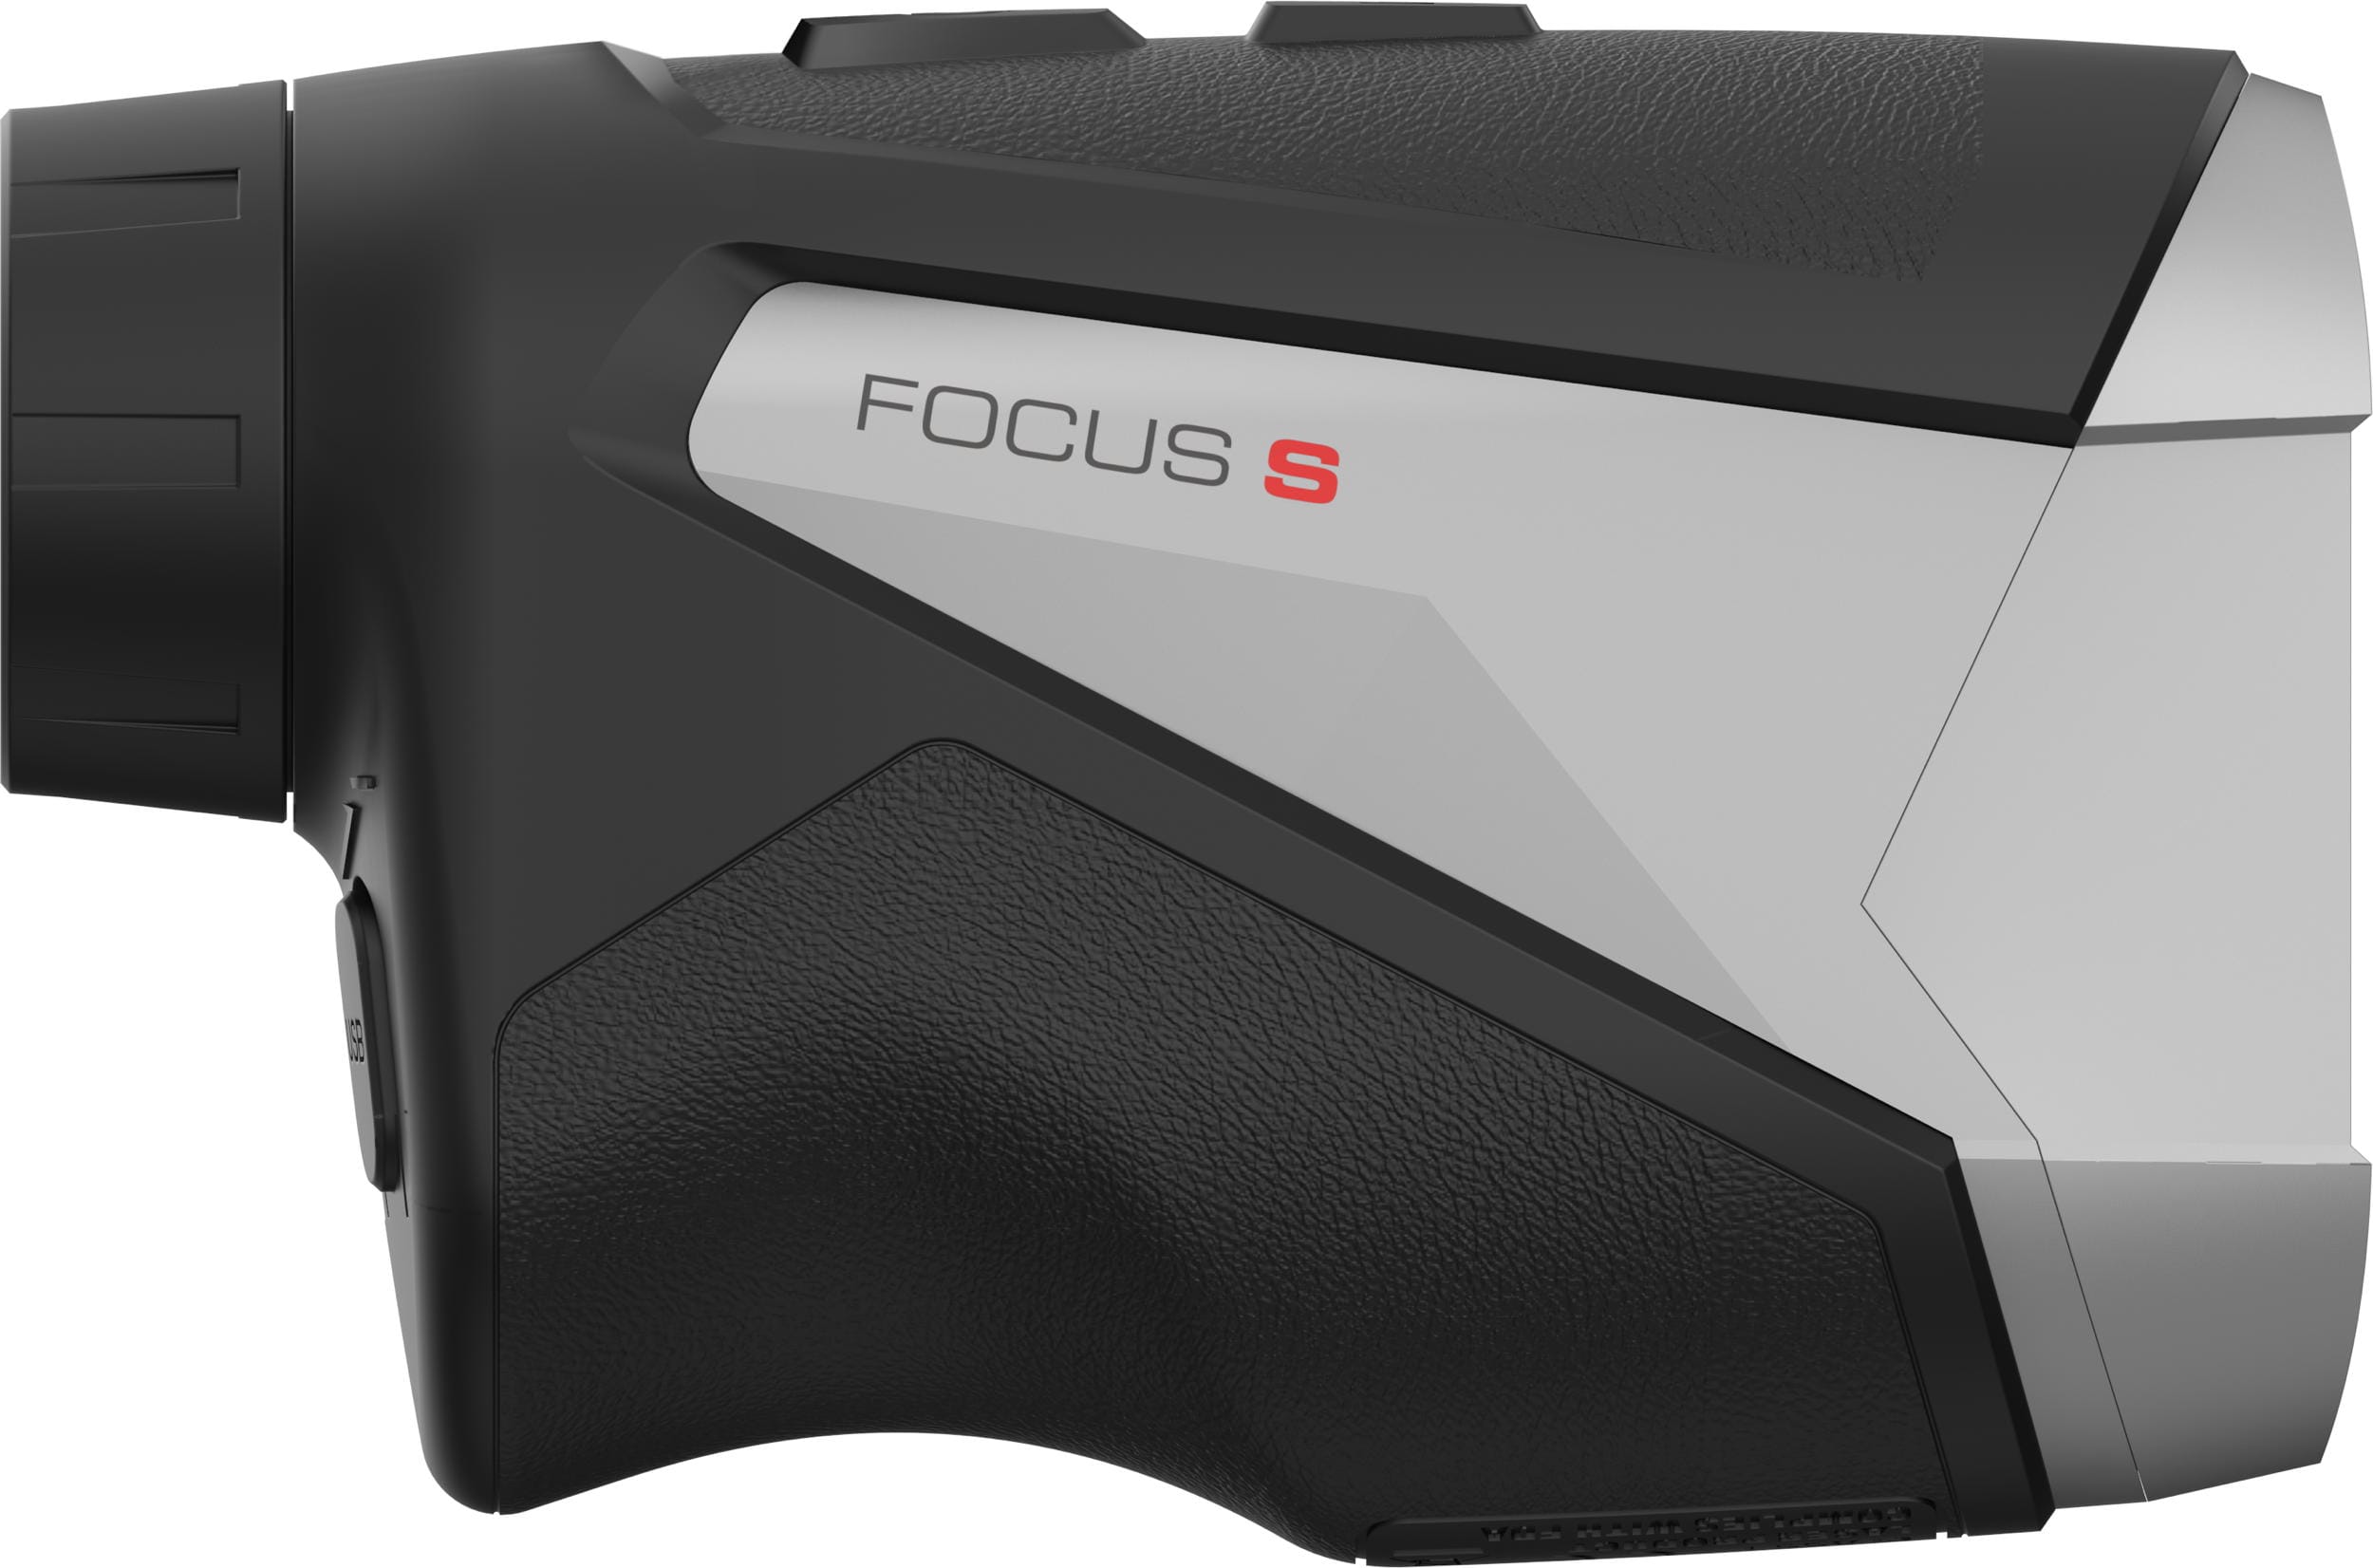 Zoom Focus S Laser